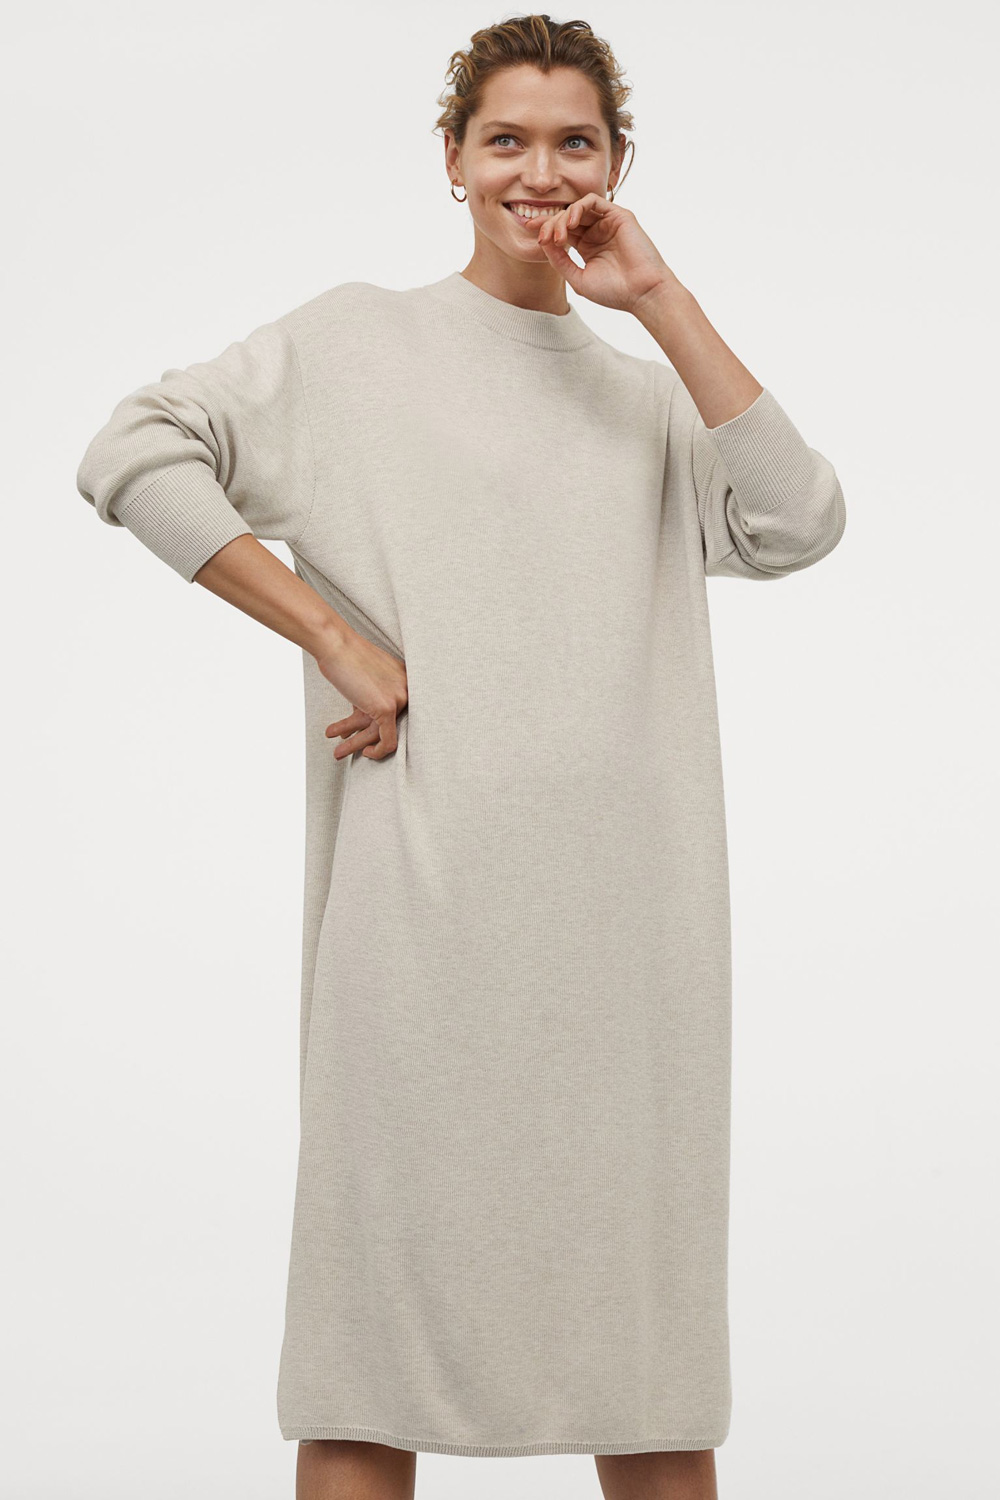 H&M pulover haljina 2021.